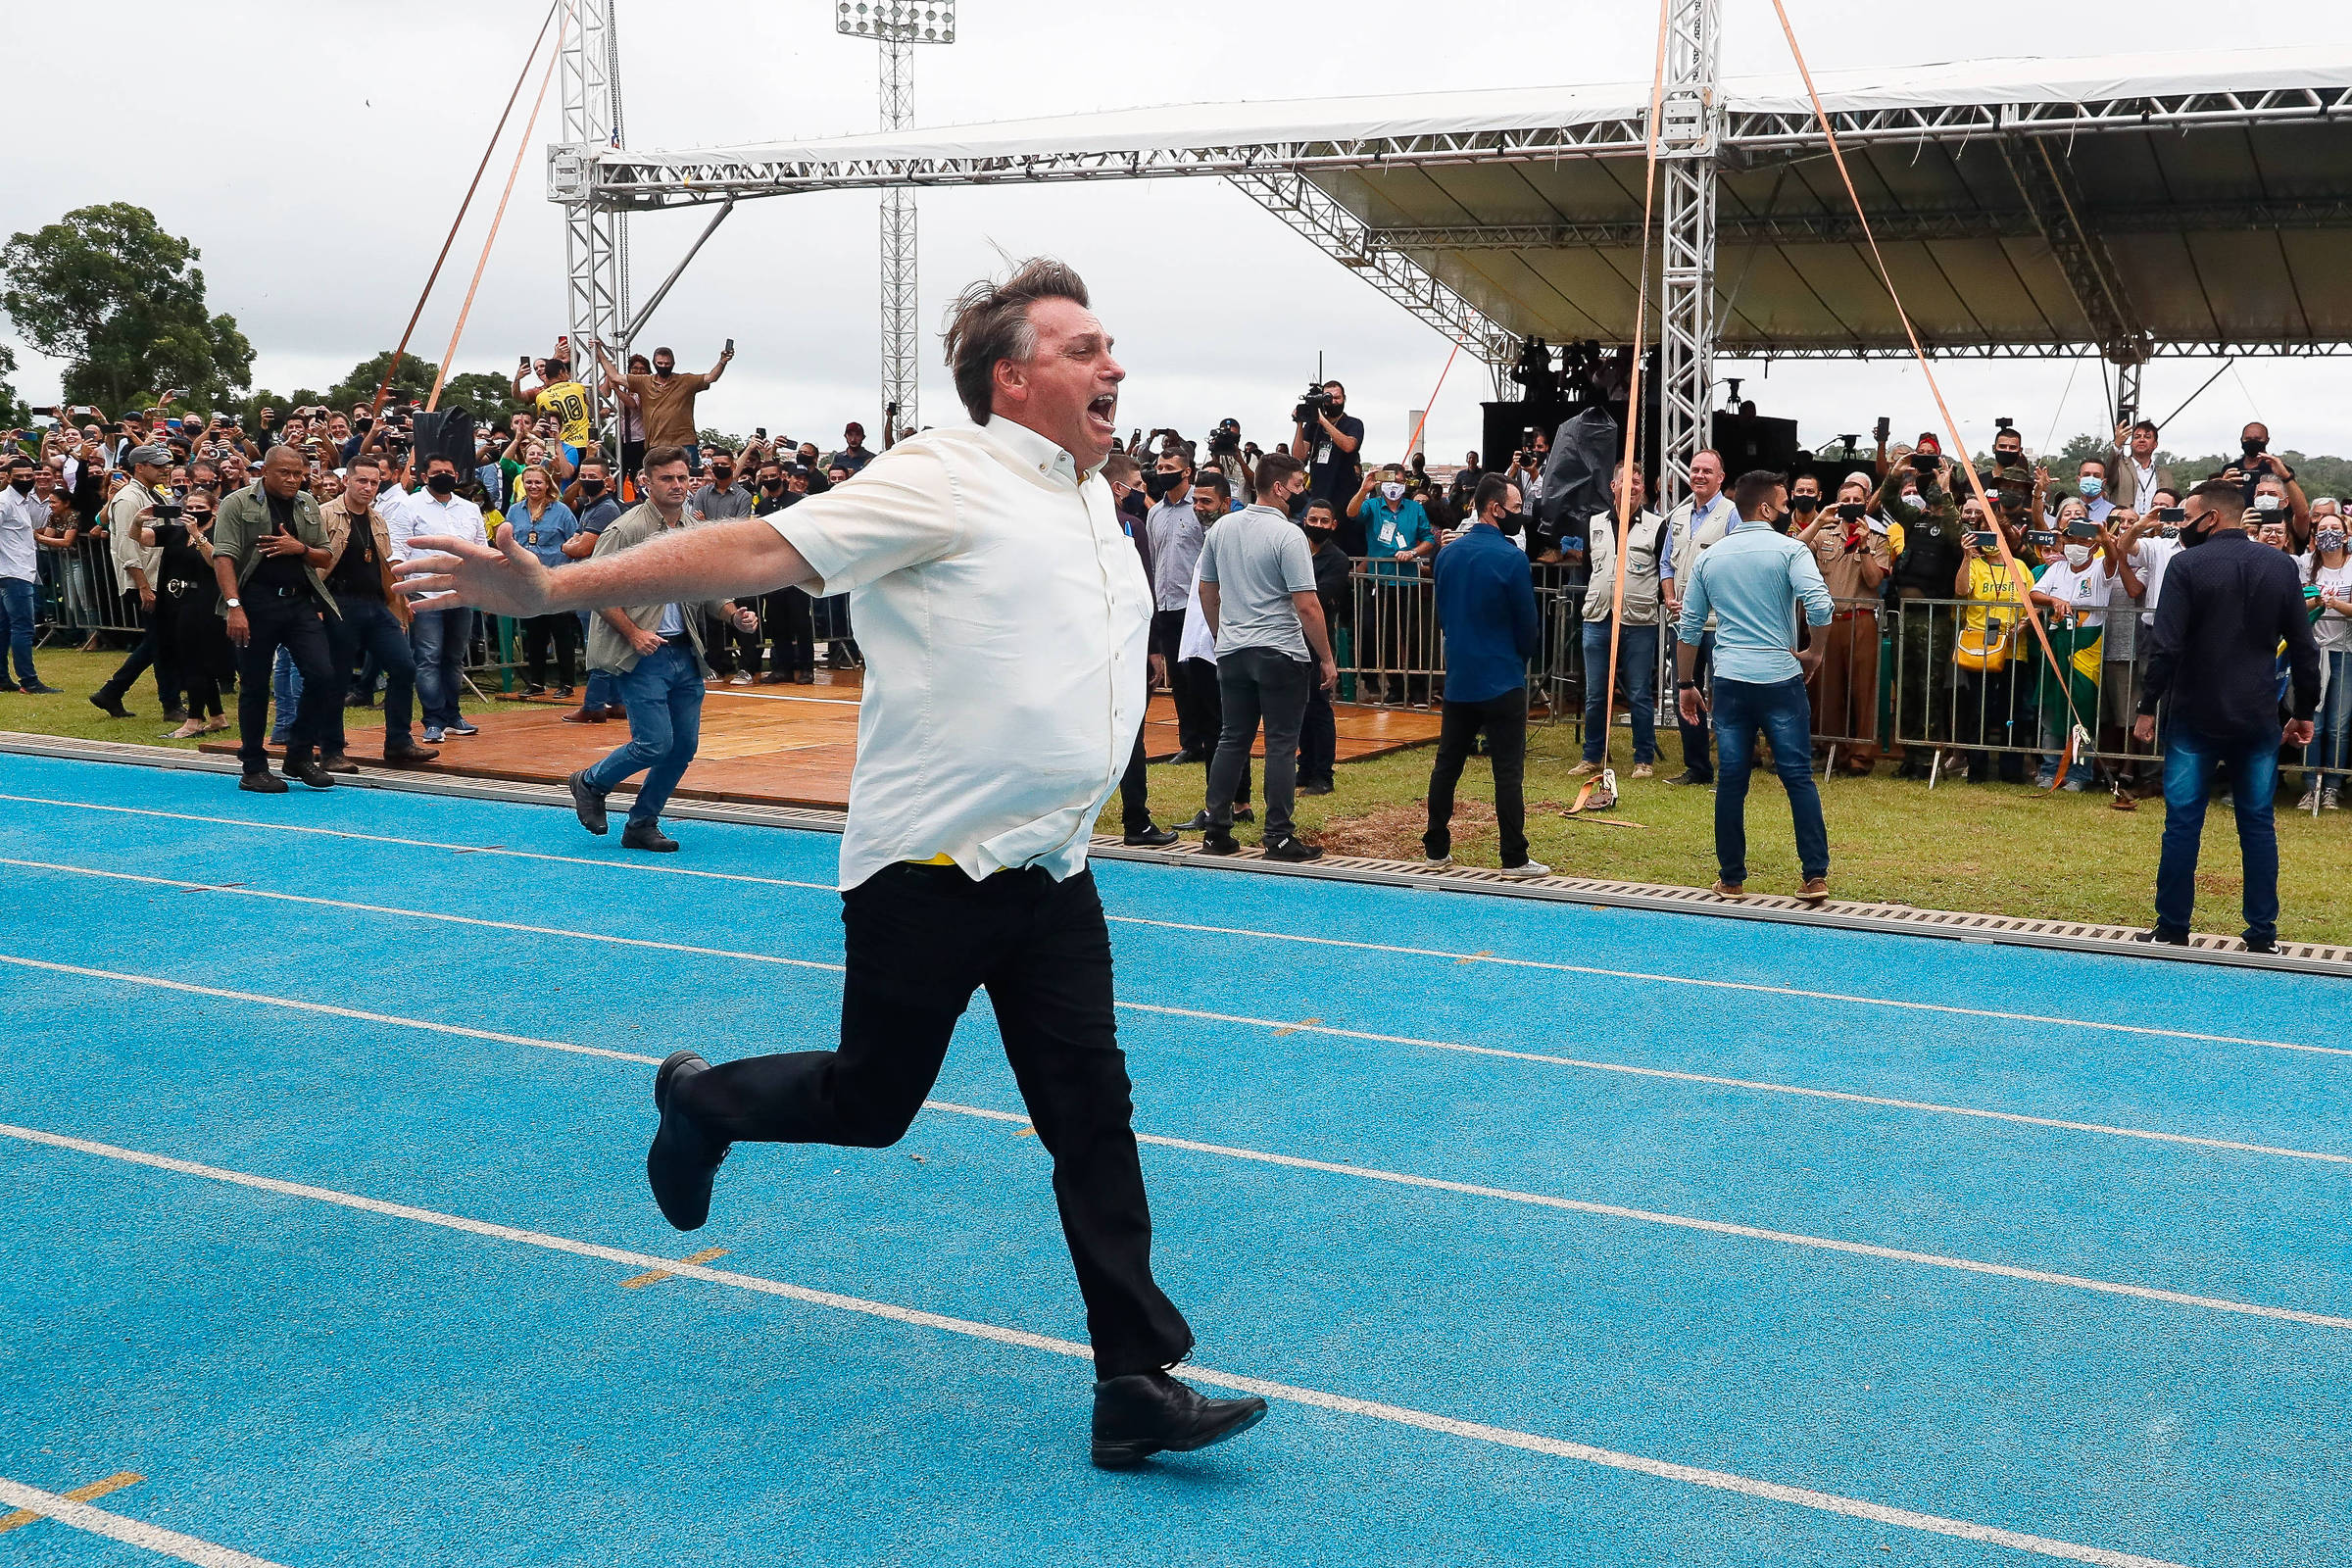 Andando a passos lentos, caso Flávio Bolsonaro é reaberto com novo